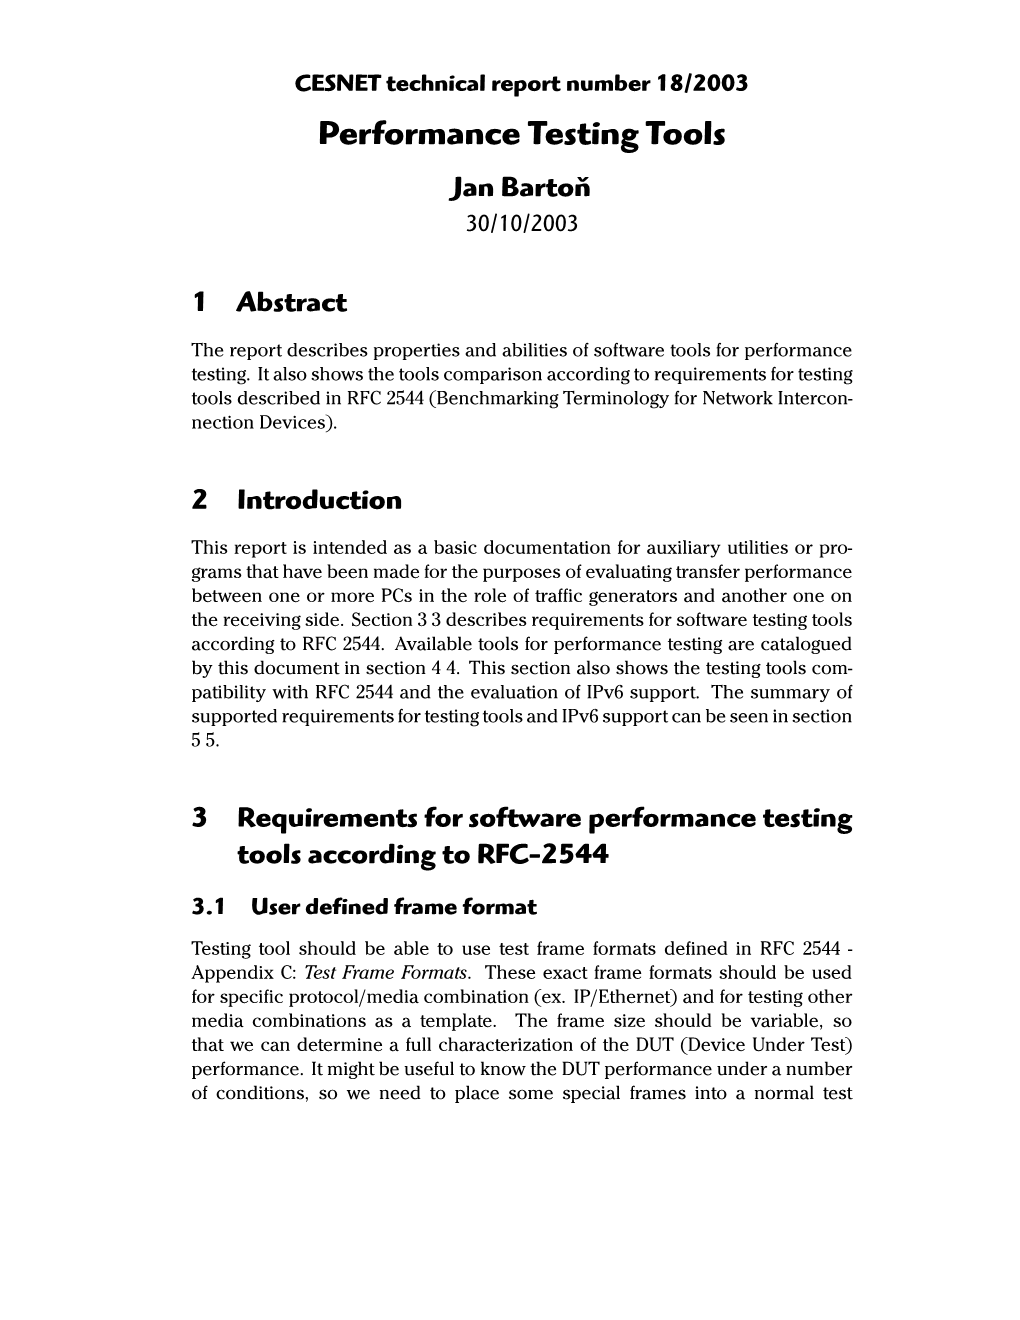 Performance Testing Tools Jan Bartoň 30/10/2003